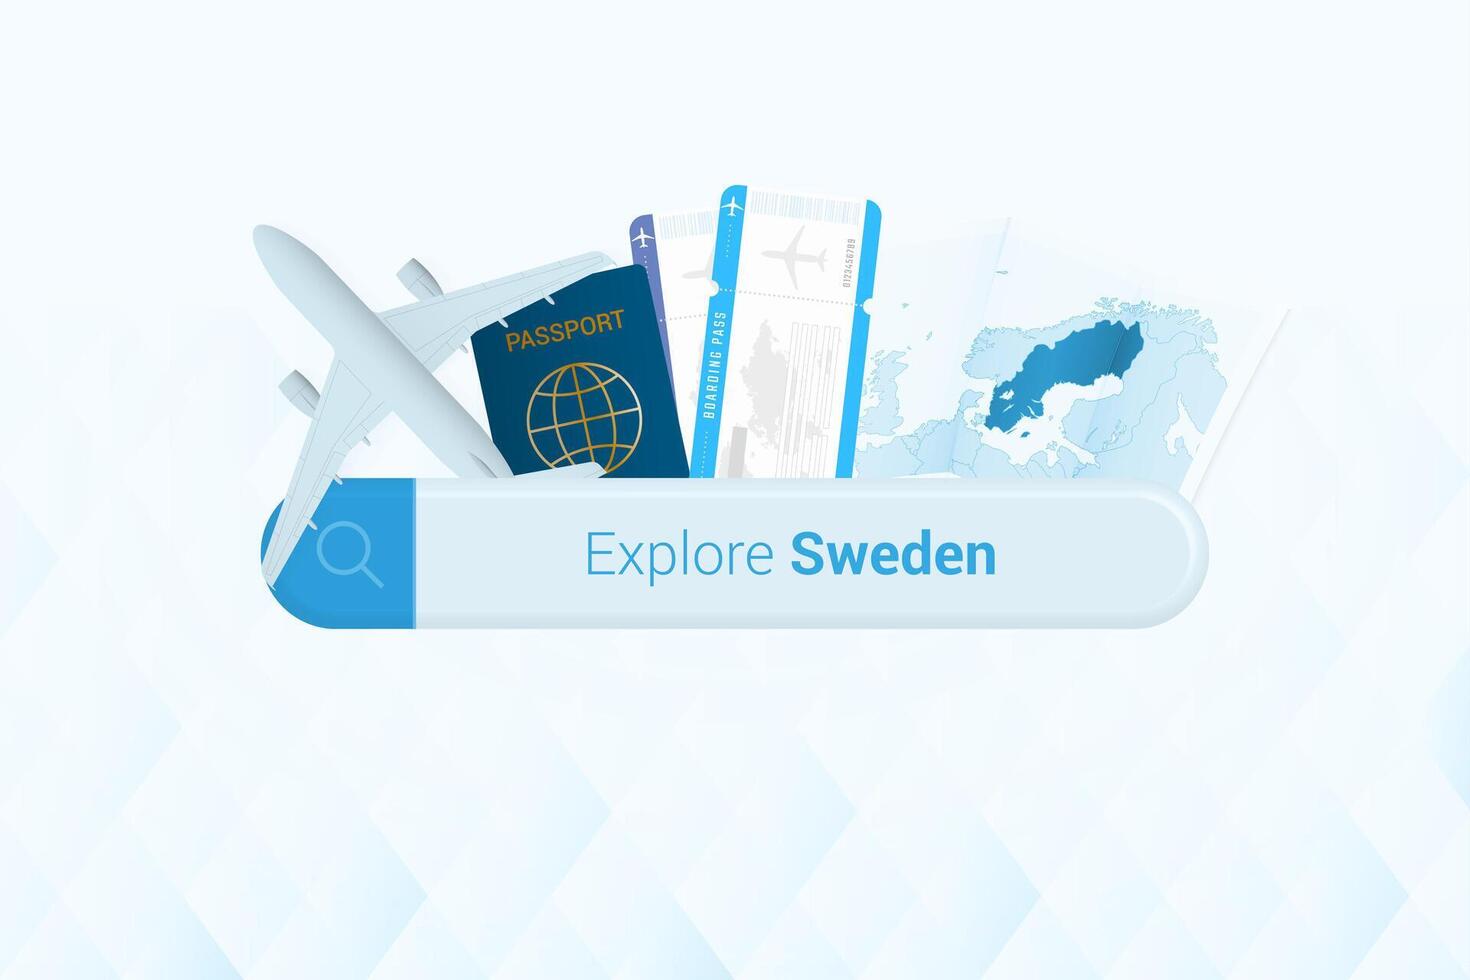 buscando Entradas a Suecia o viaje destino en Suecia. buscando bar con avión, pasaporte, embarque aprobar, Entradas y mapa. vector